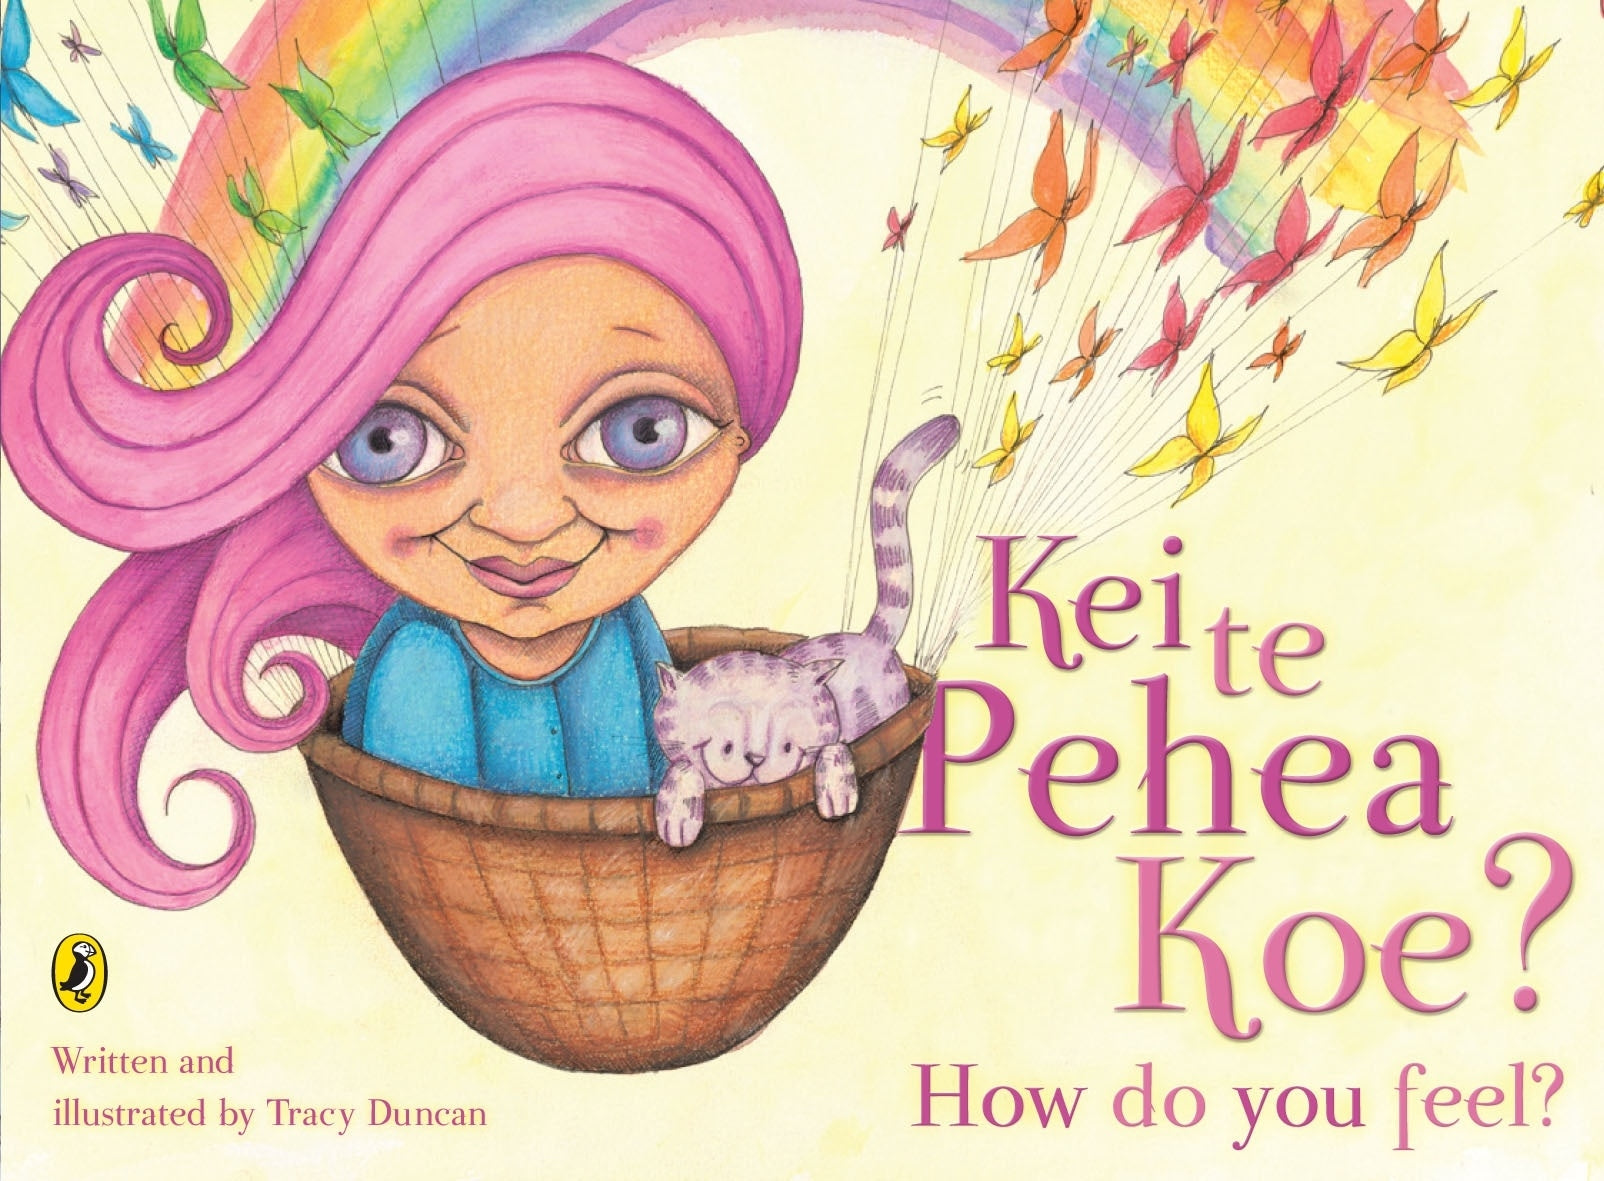 Kei Te Pehea Koe? by Tracy Duncan